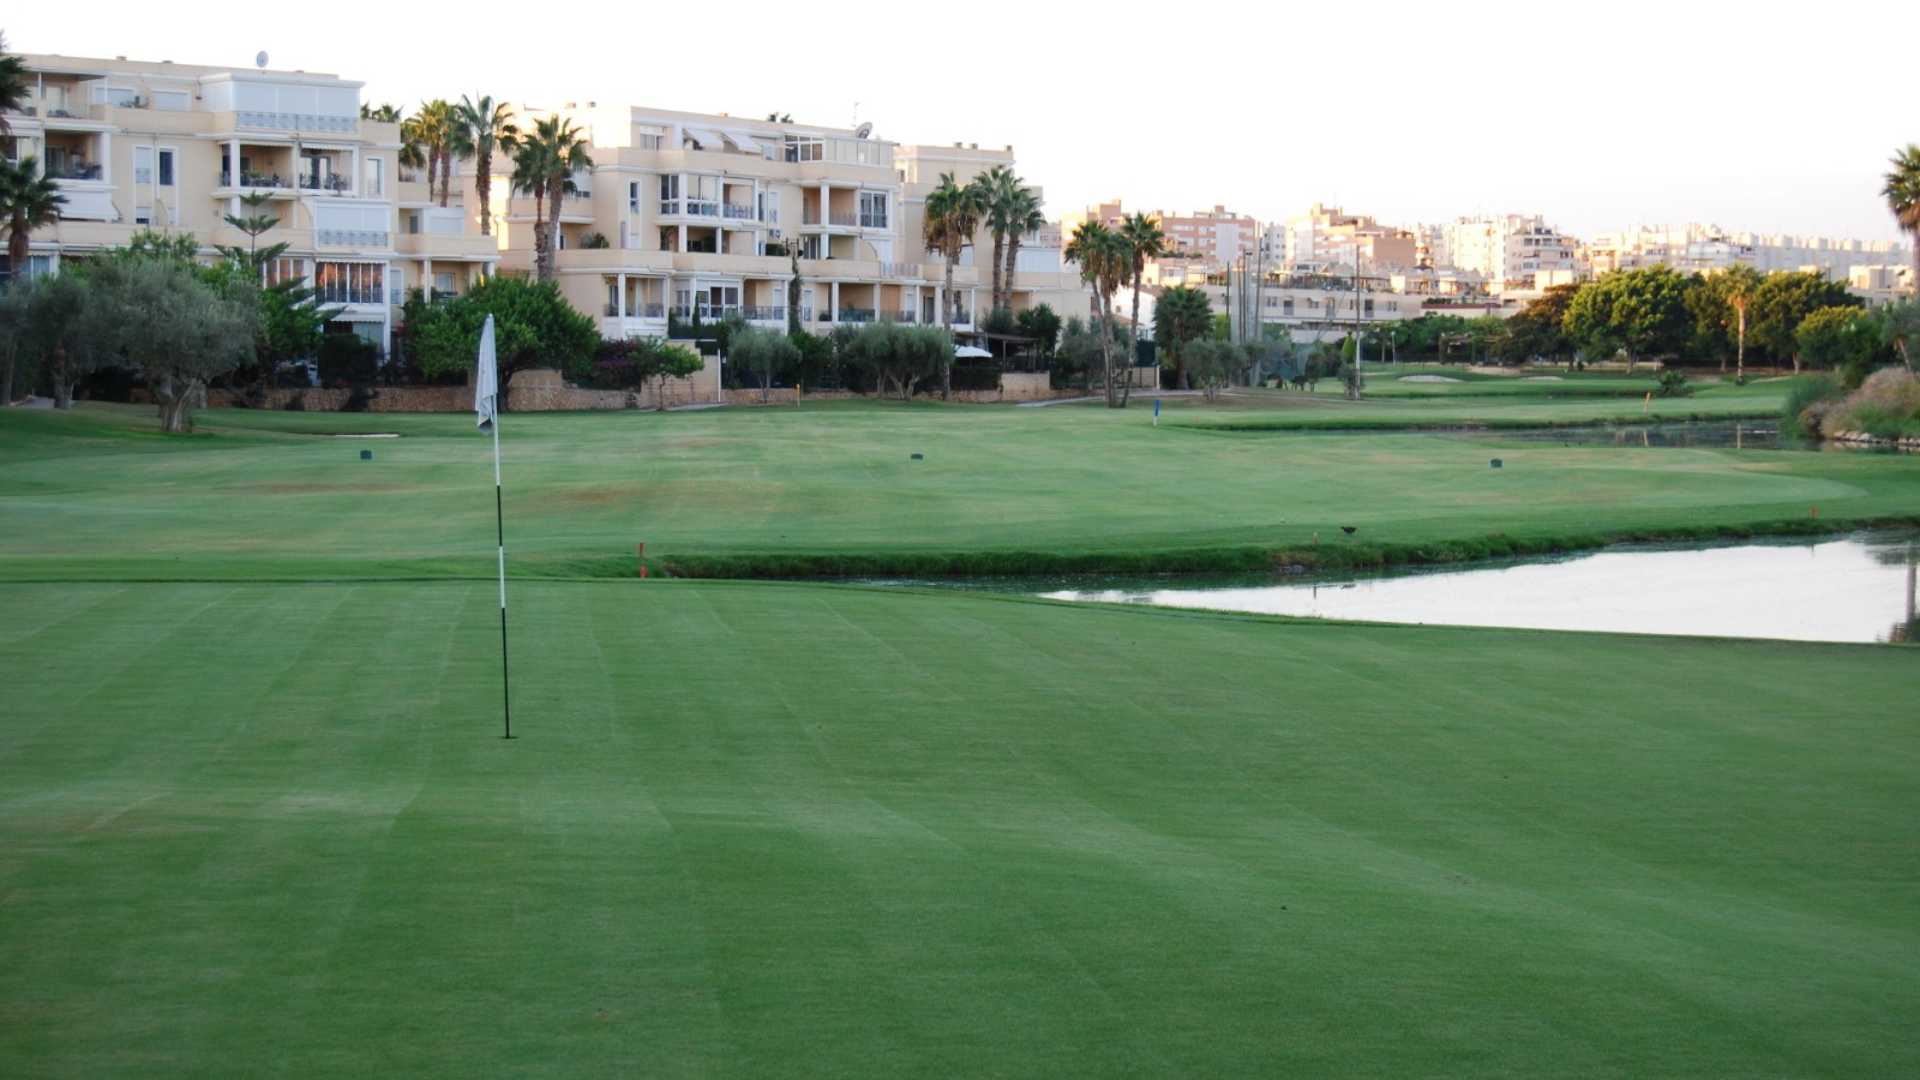 Alicante Golf